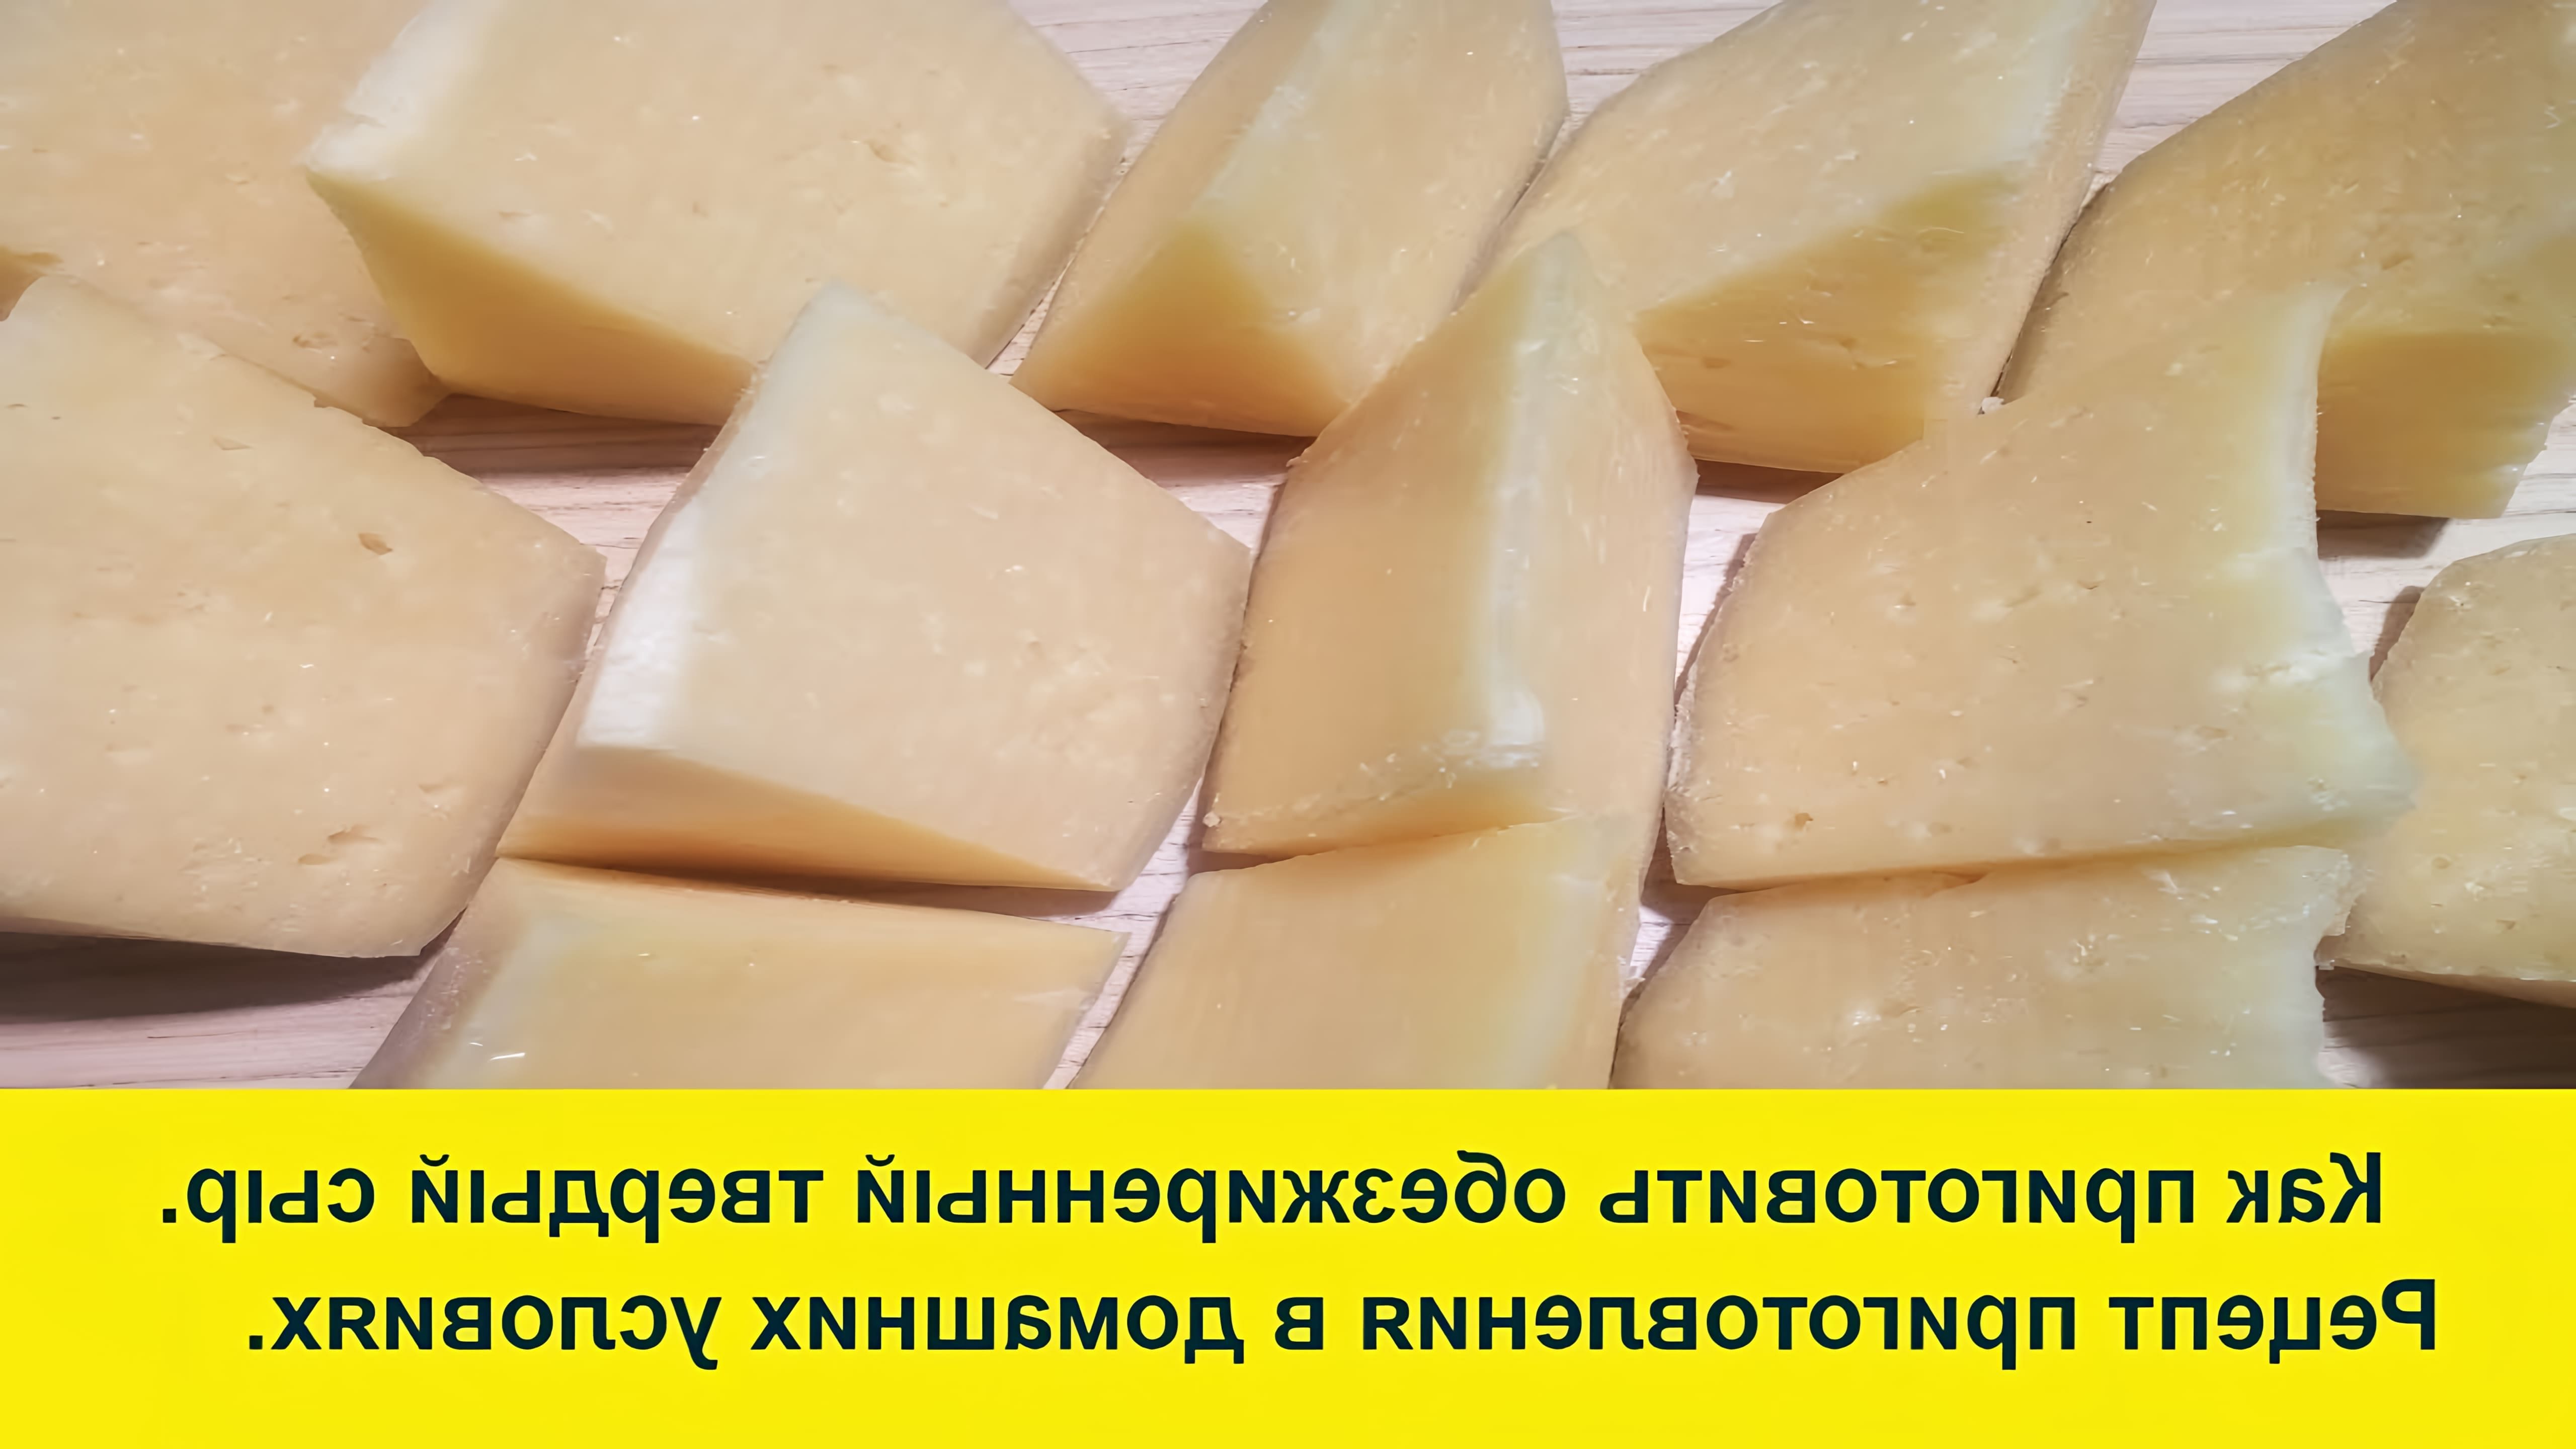 В этом видео Ольга Елисеева делится рецептом приготовления обезжиренного сыра